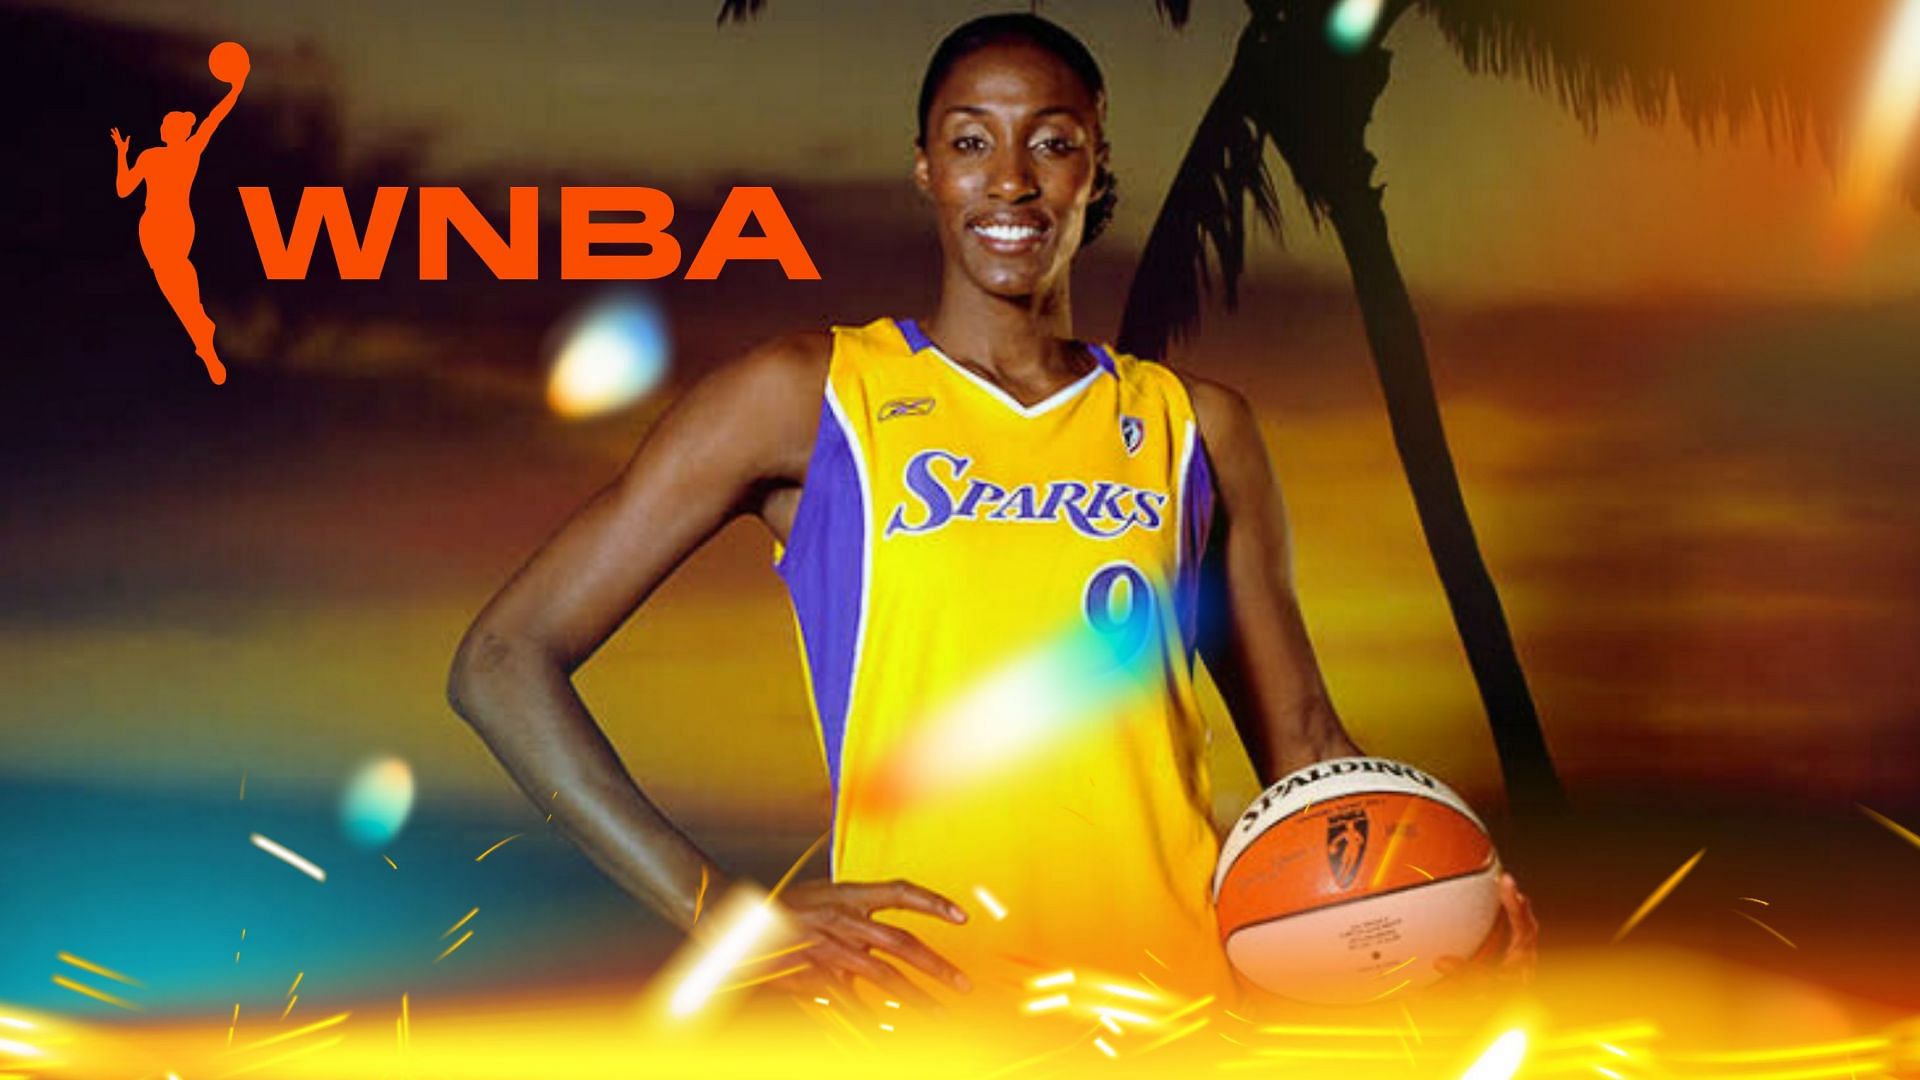 WNBA star Lisa Leslie talks about the league then versus now